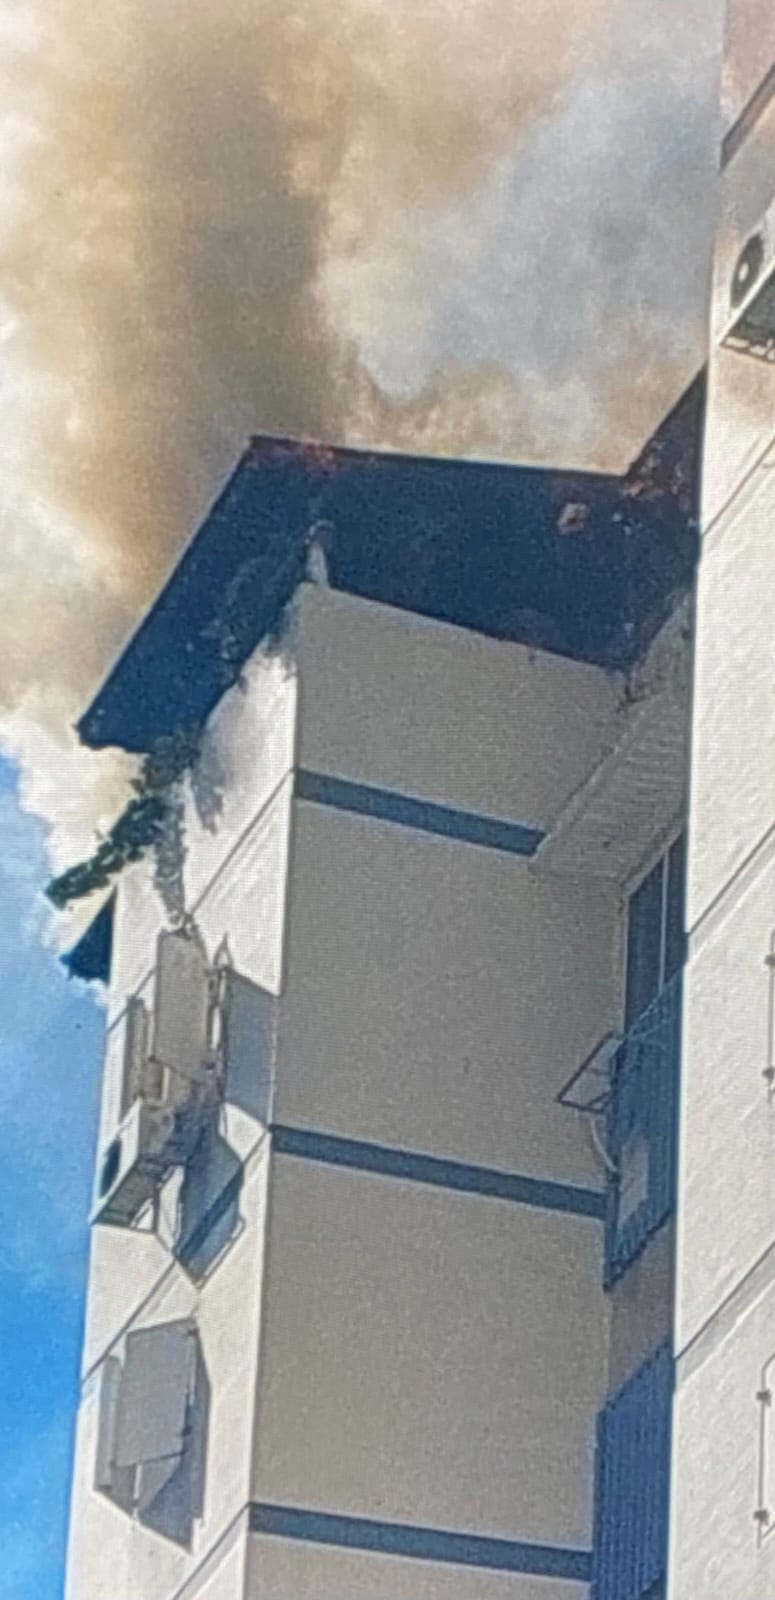 اللد: حريق في شقّة على الطابق التاسع والاطفائية تهرع للمكان 